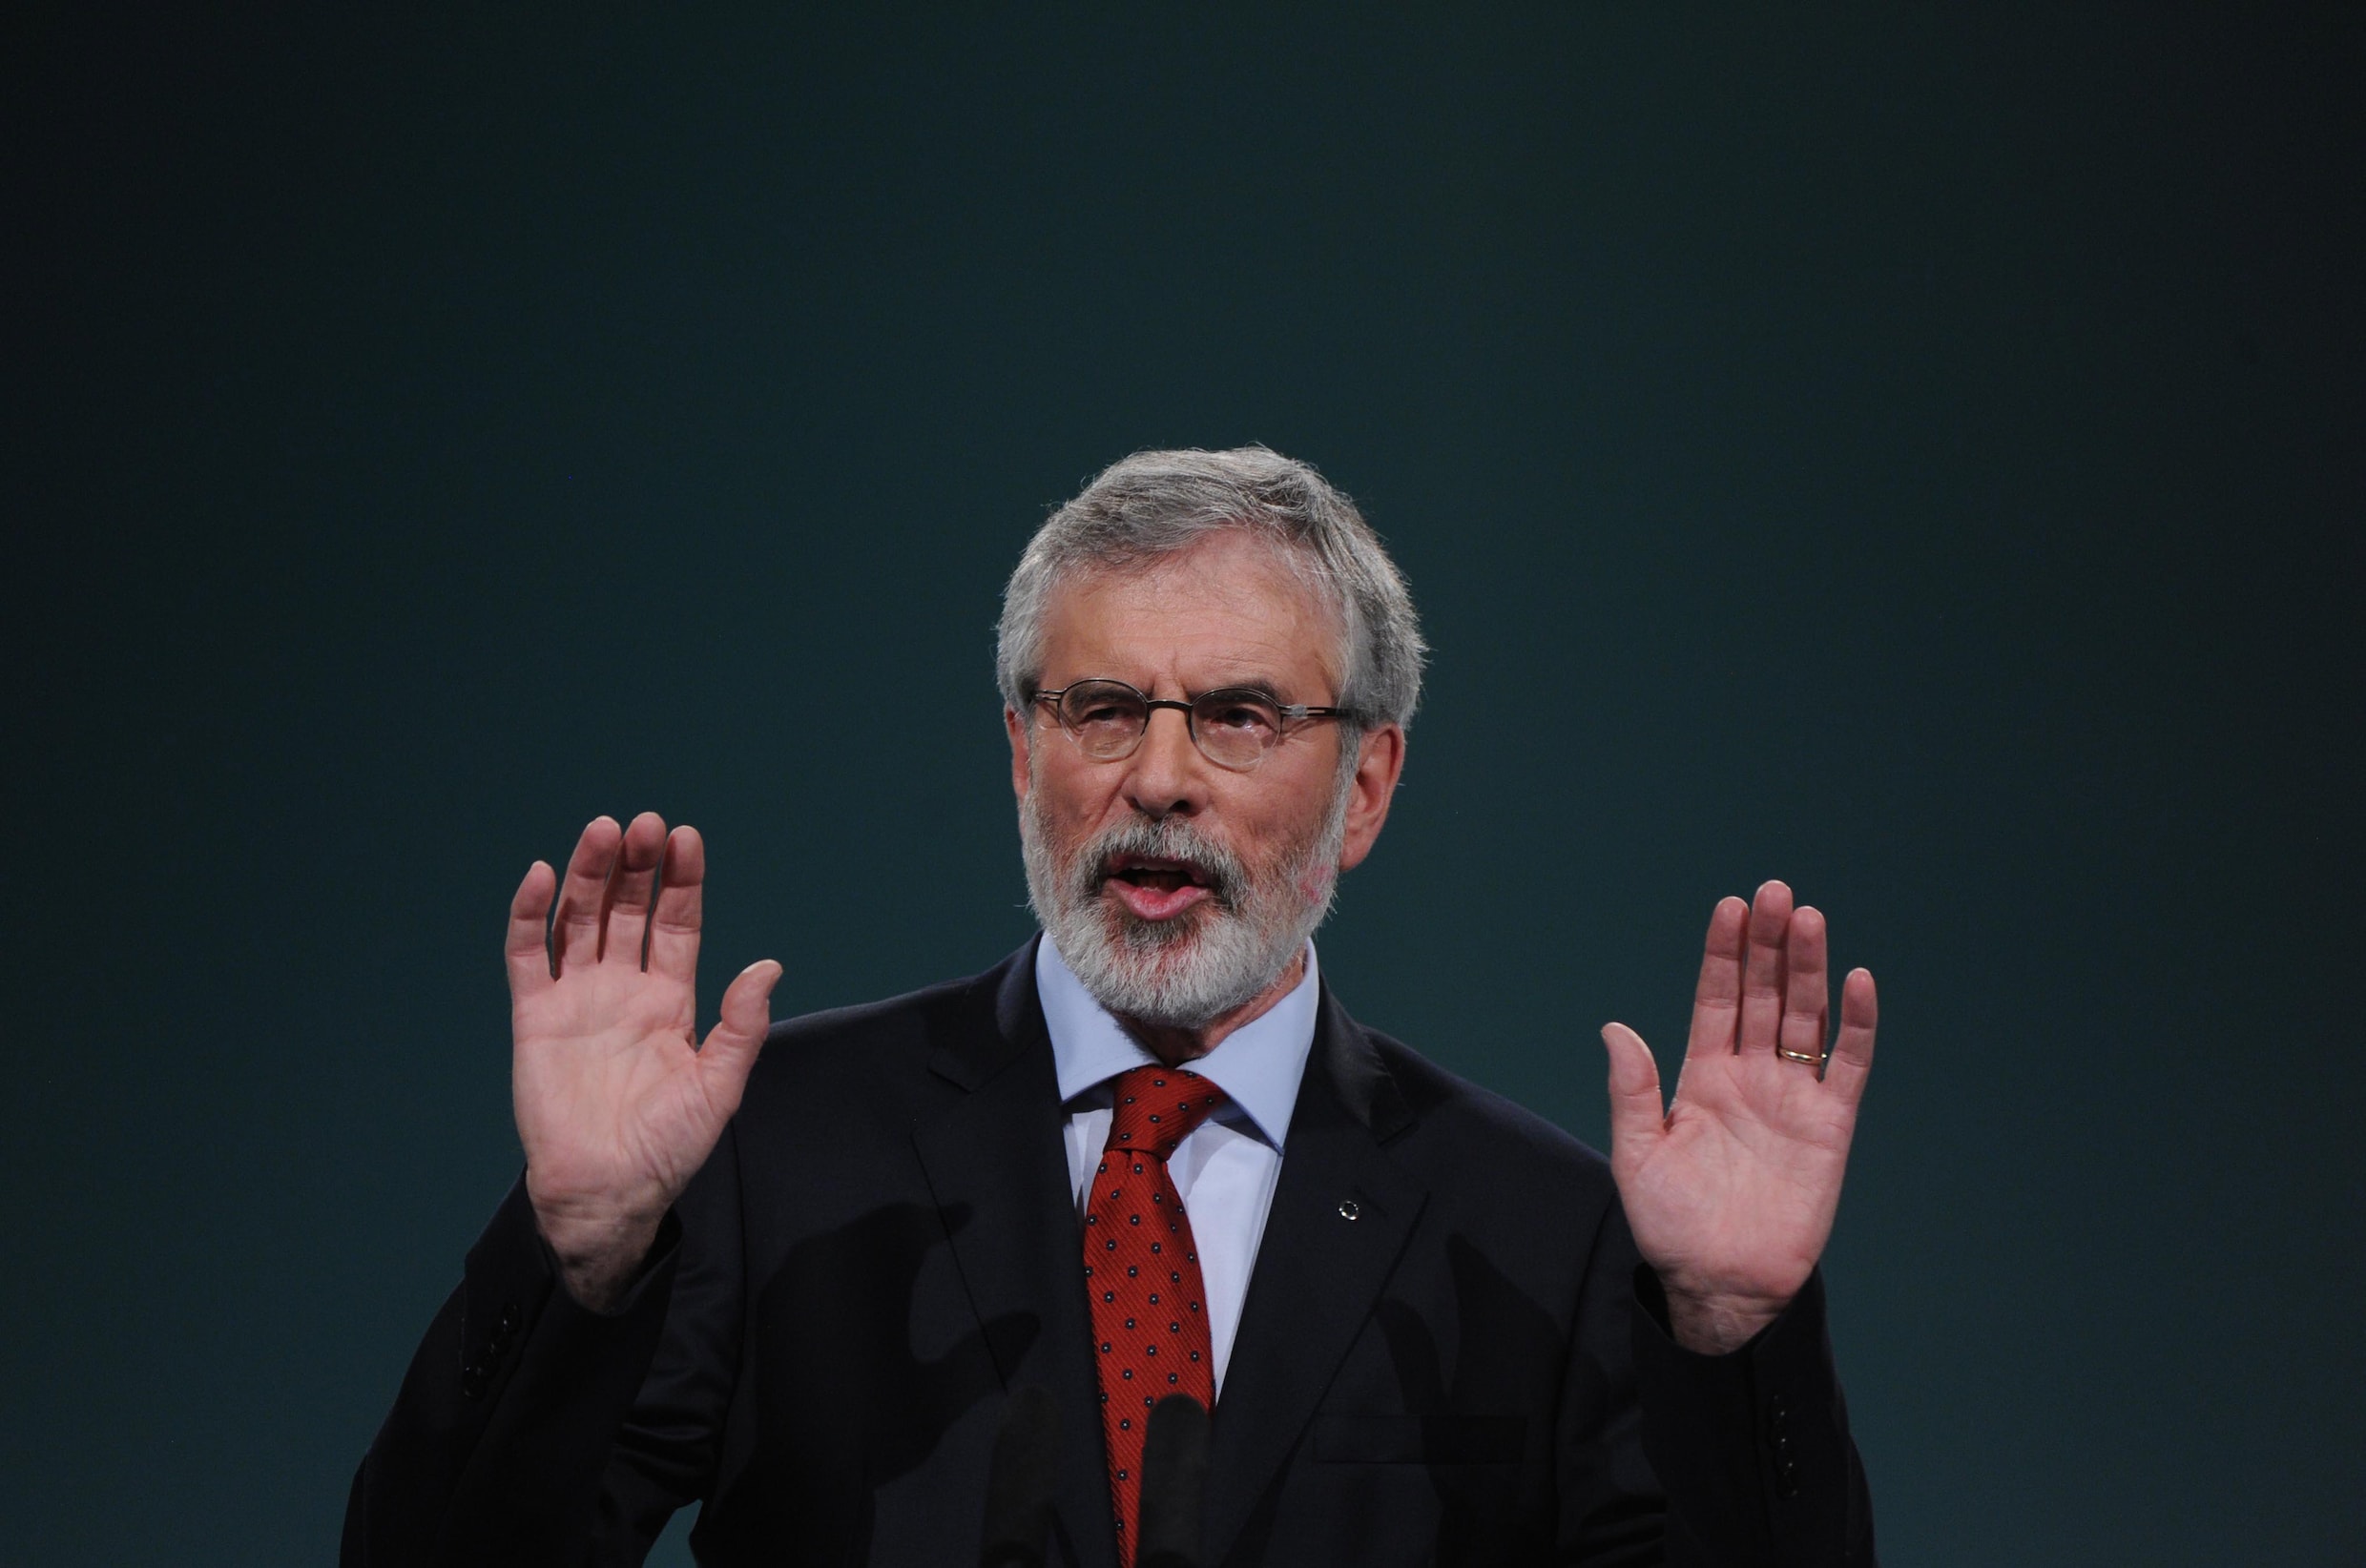 Sinn Féin-leider Gerry Adams stapt na bijna 35 jaar op als partijvoorzitter